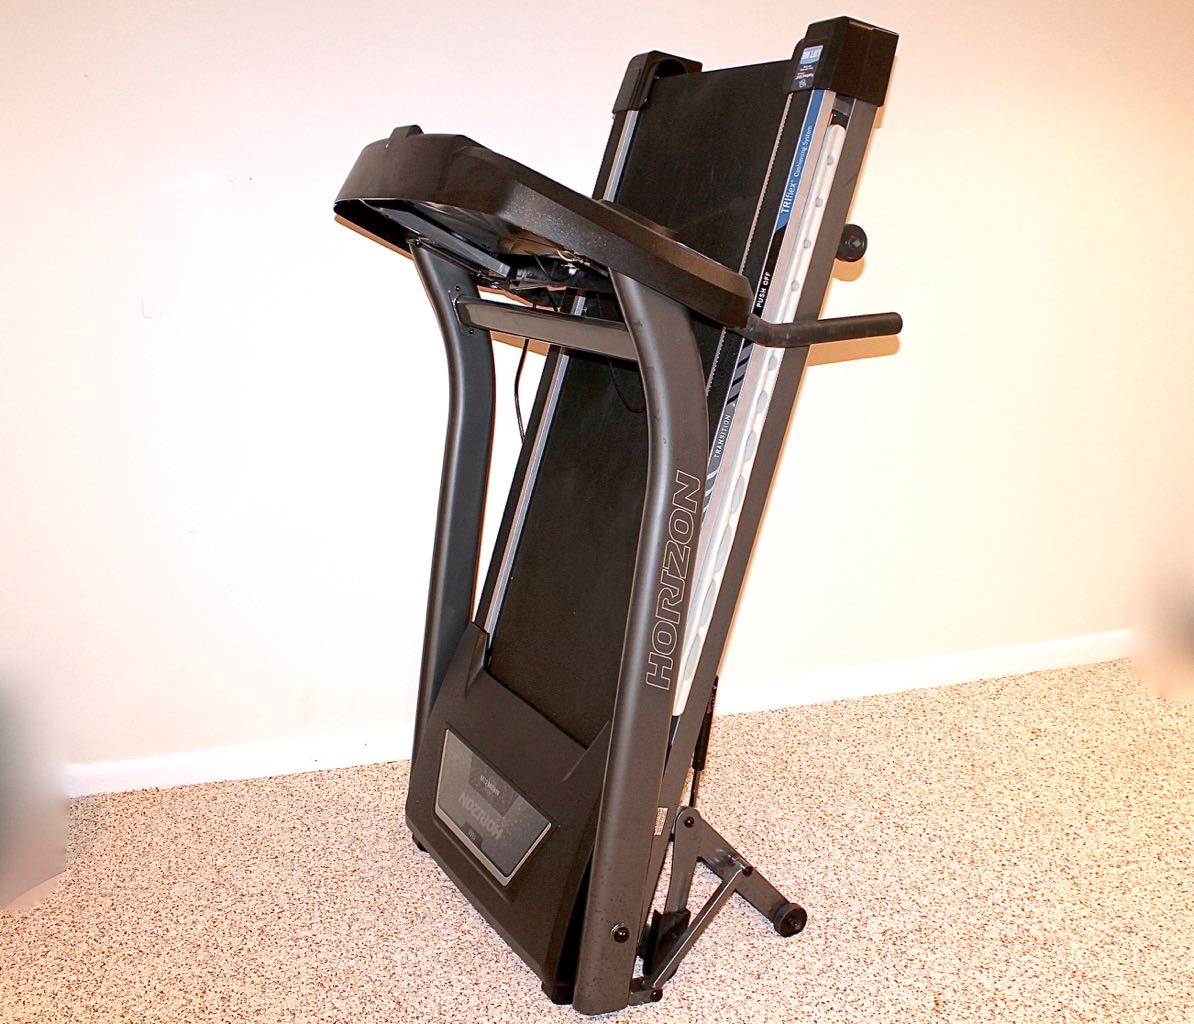 horizon treadmill folding